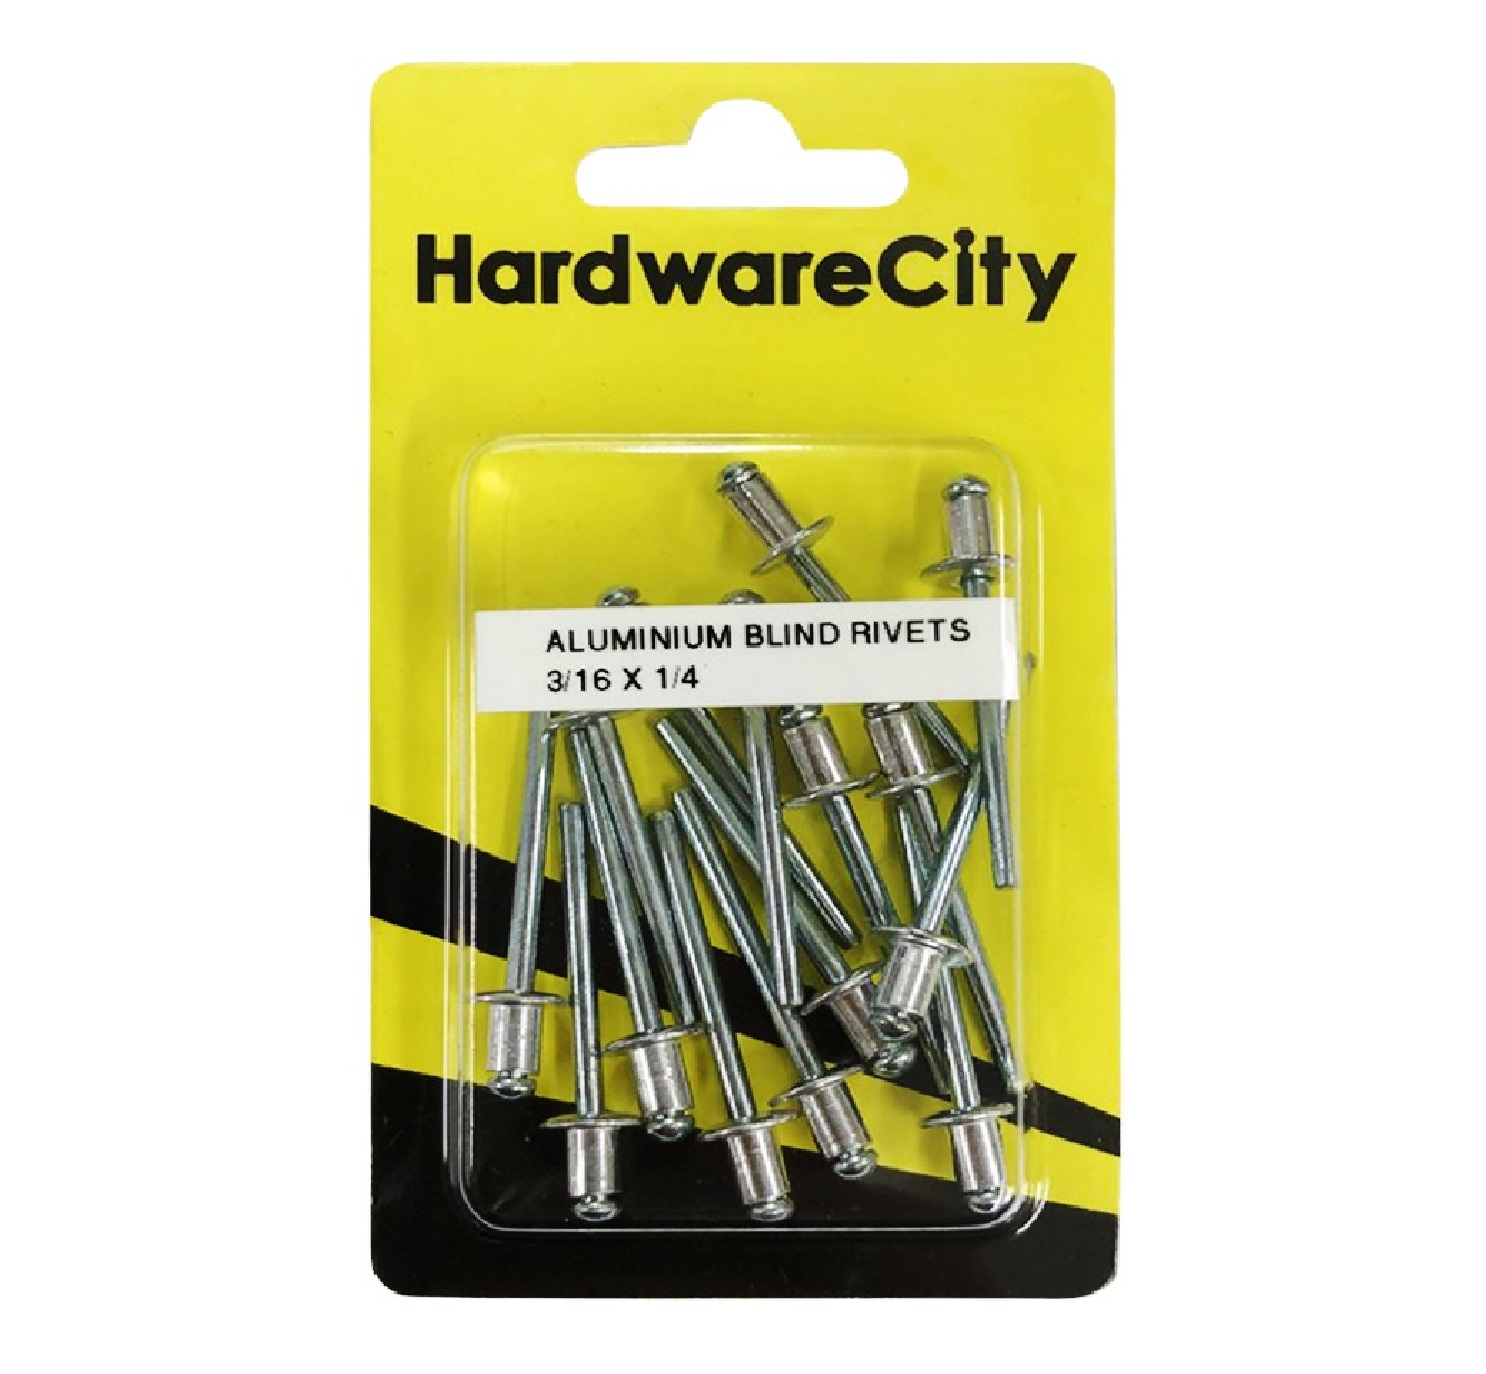 HardwareCity 3/16 X 1/4 Aluminium Rivets, 20PC/Pack